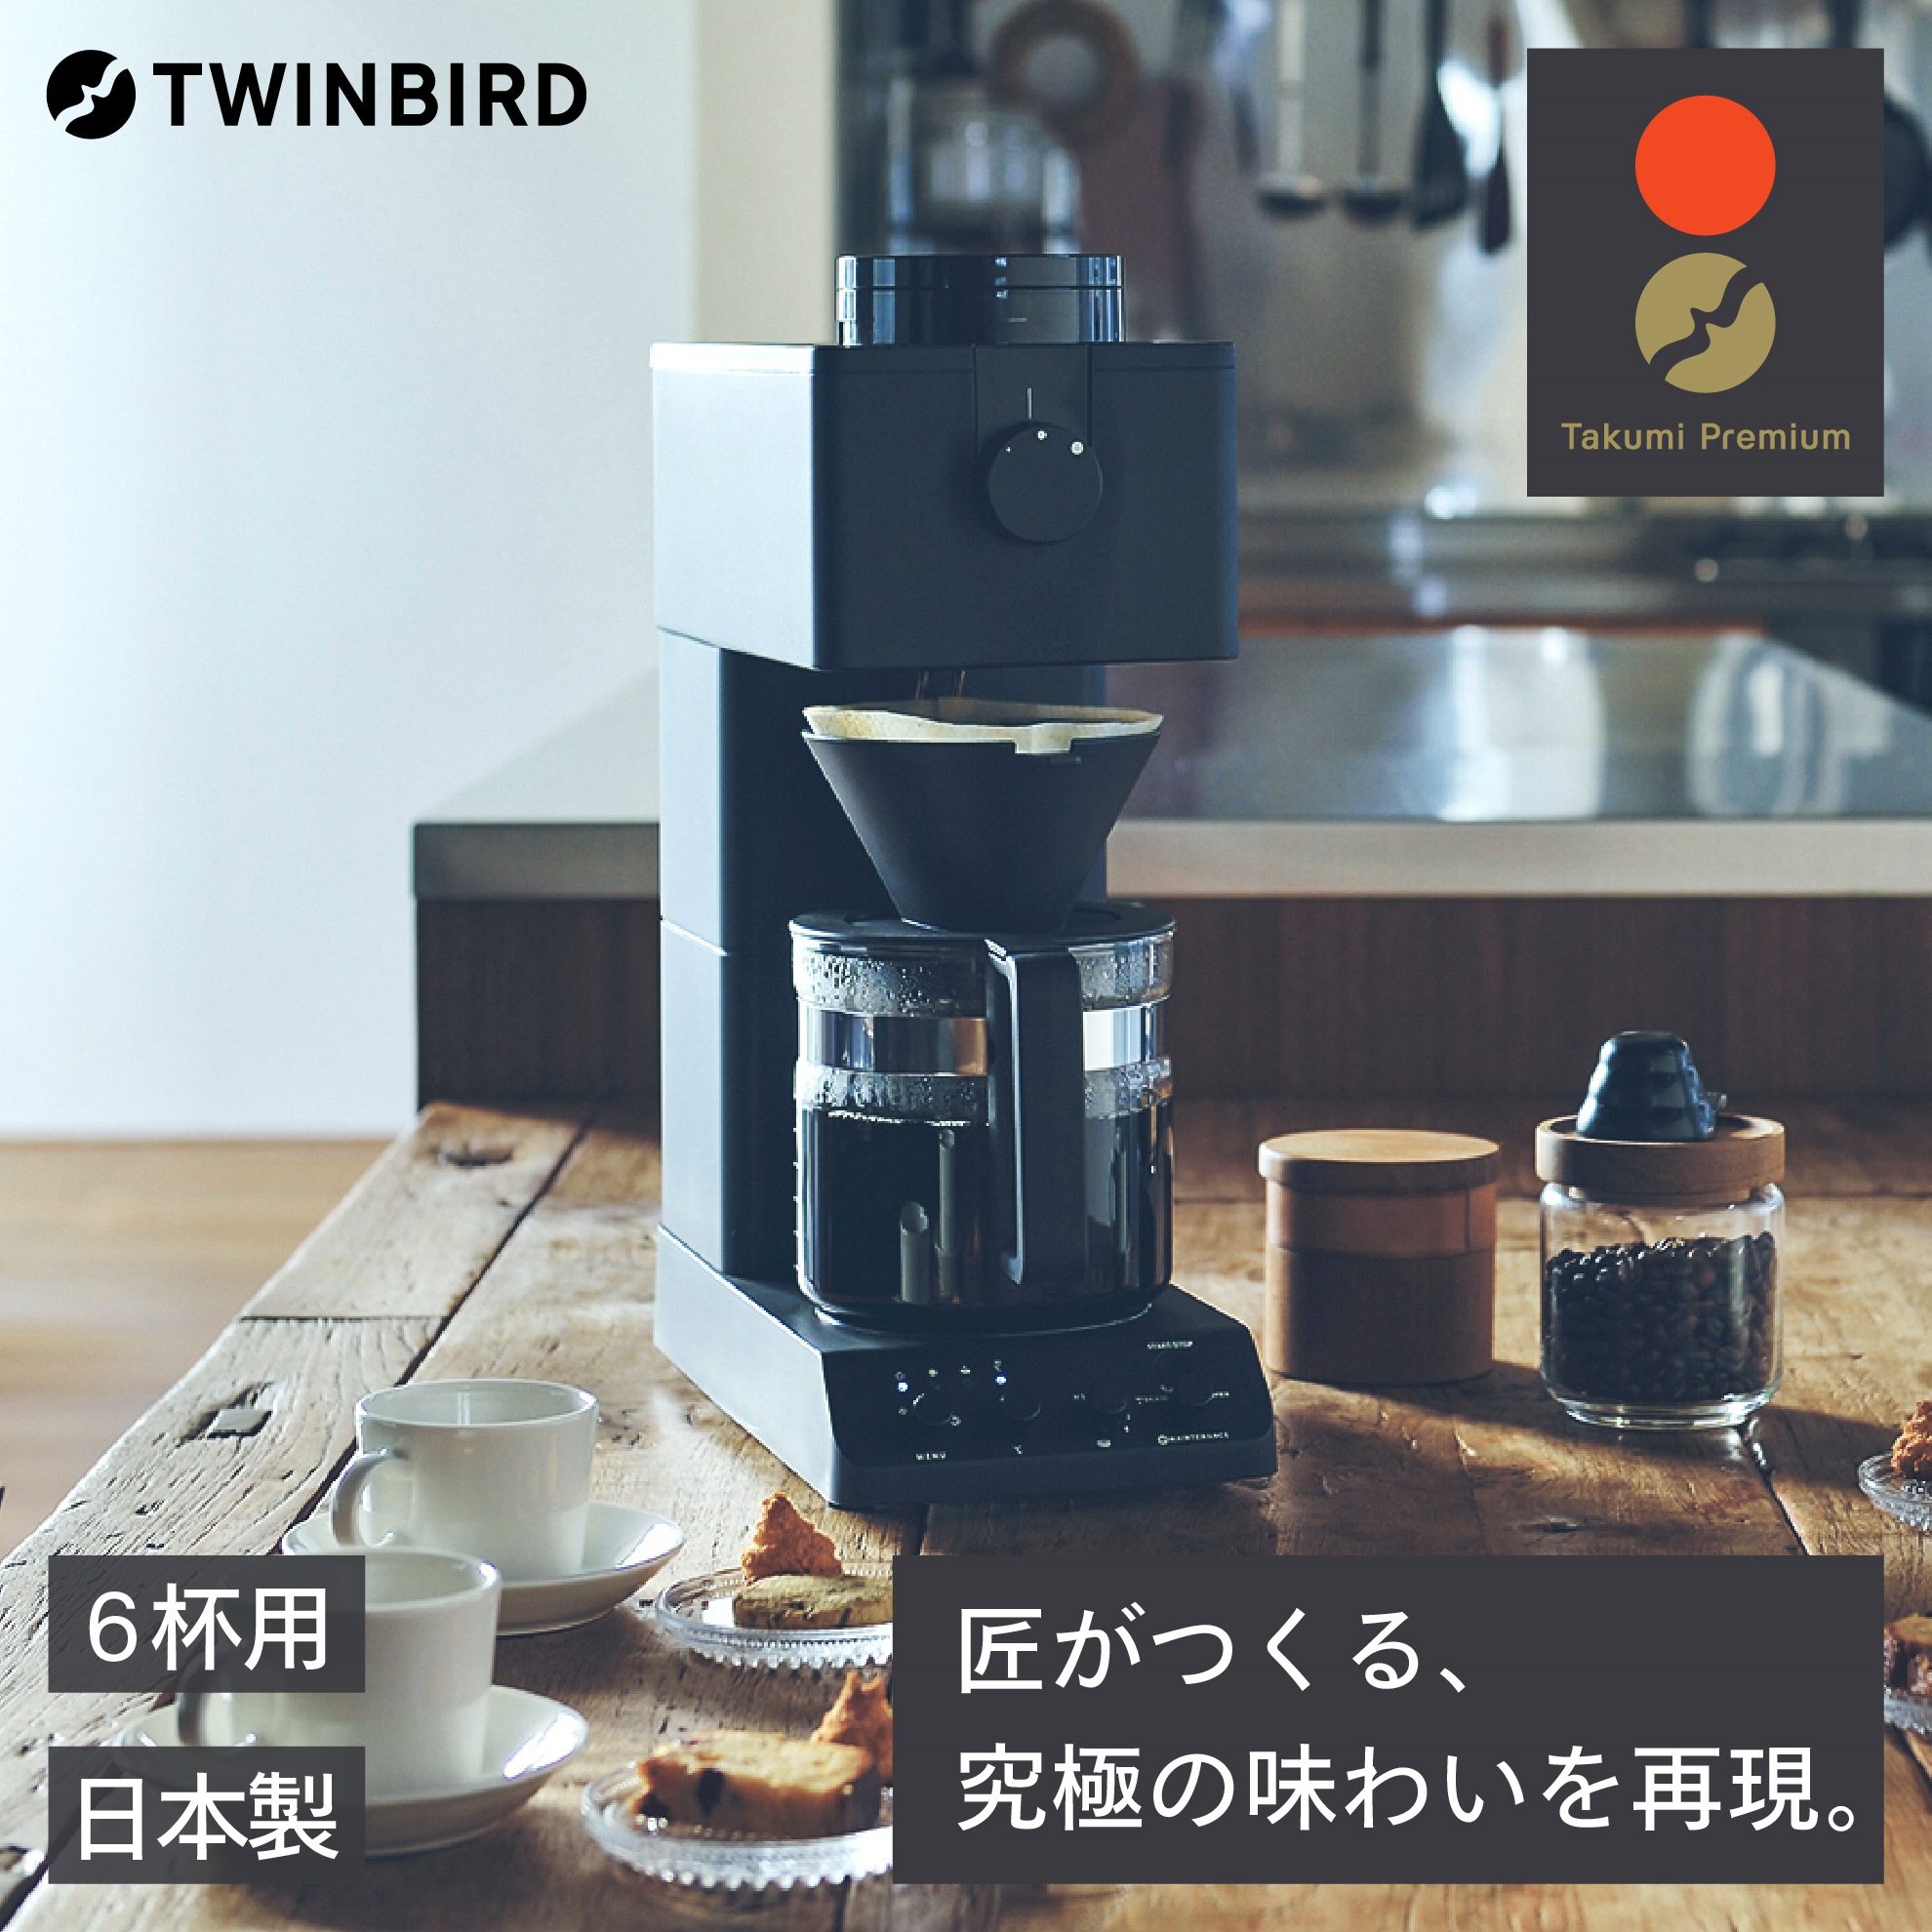 【ふるさと納税】全自動コーヒーメーカー3カップ(CM-D457B)